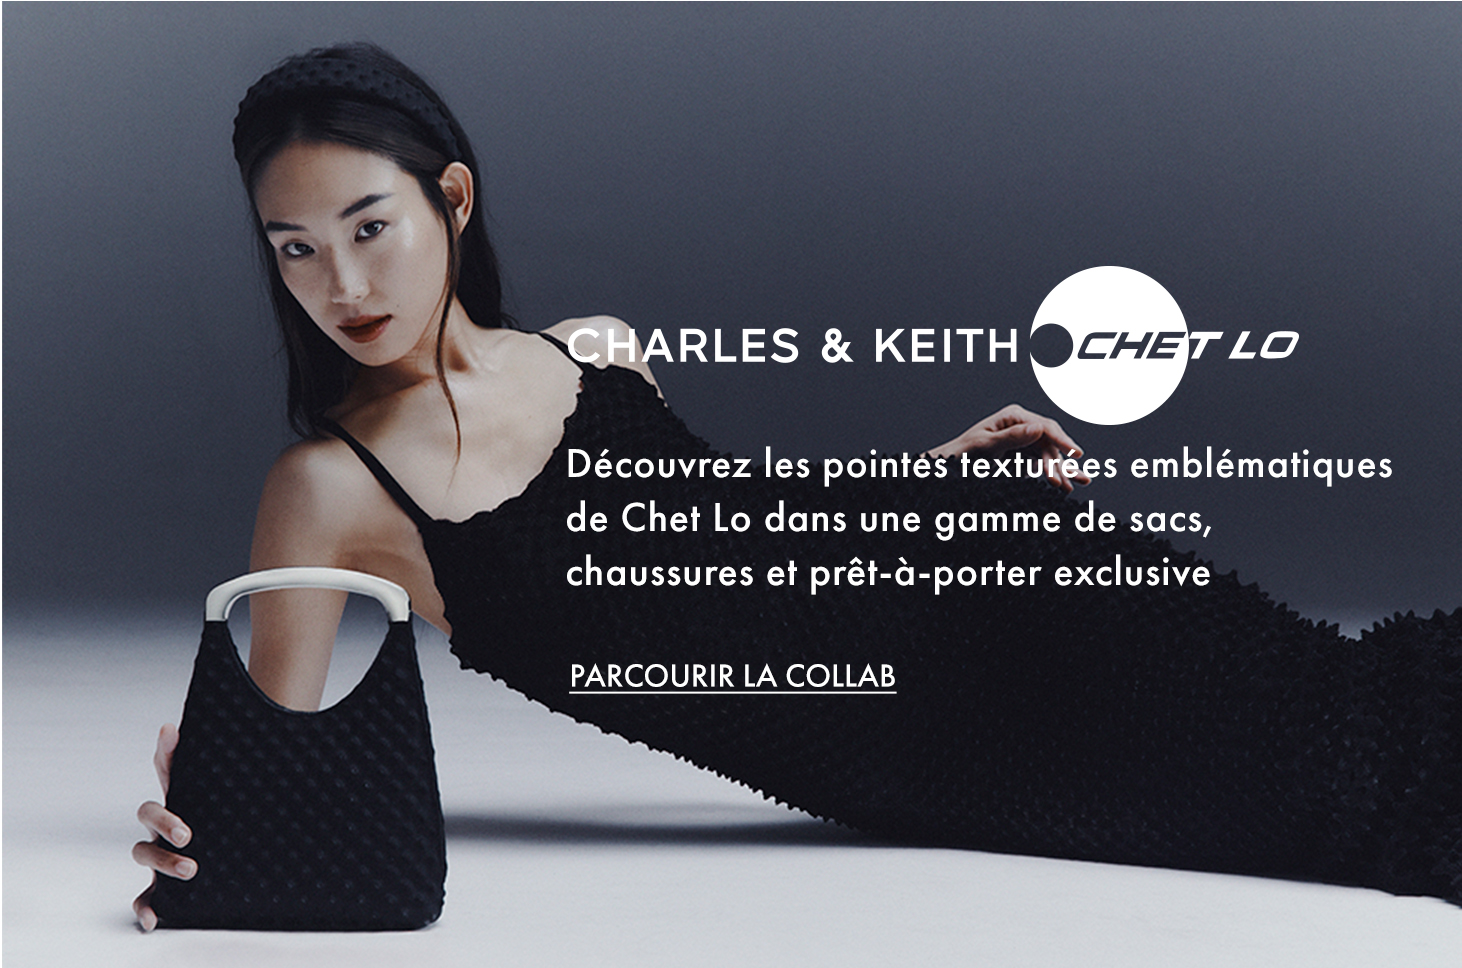 Sac texturé à pointes avec poignée métallique en noir pour femme - CHET LO x CHARLES & KEITH